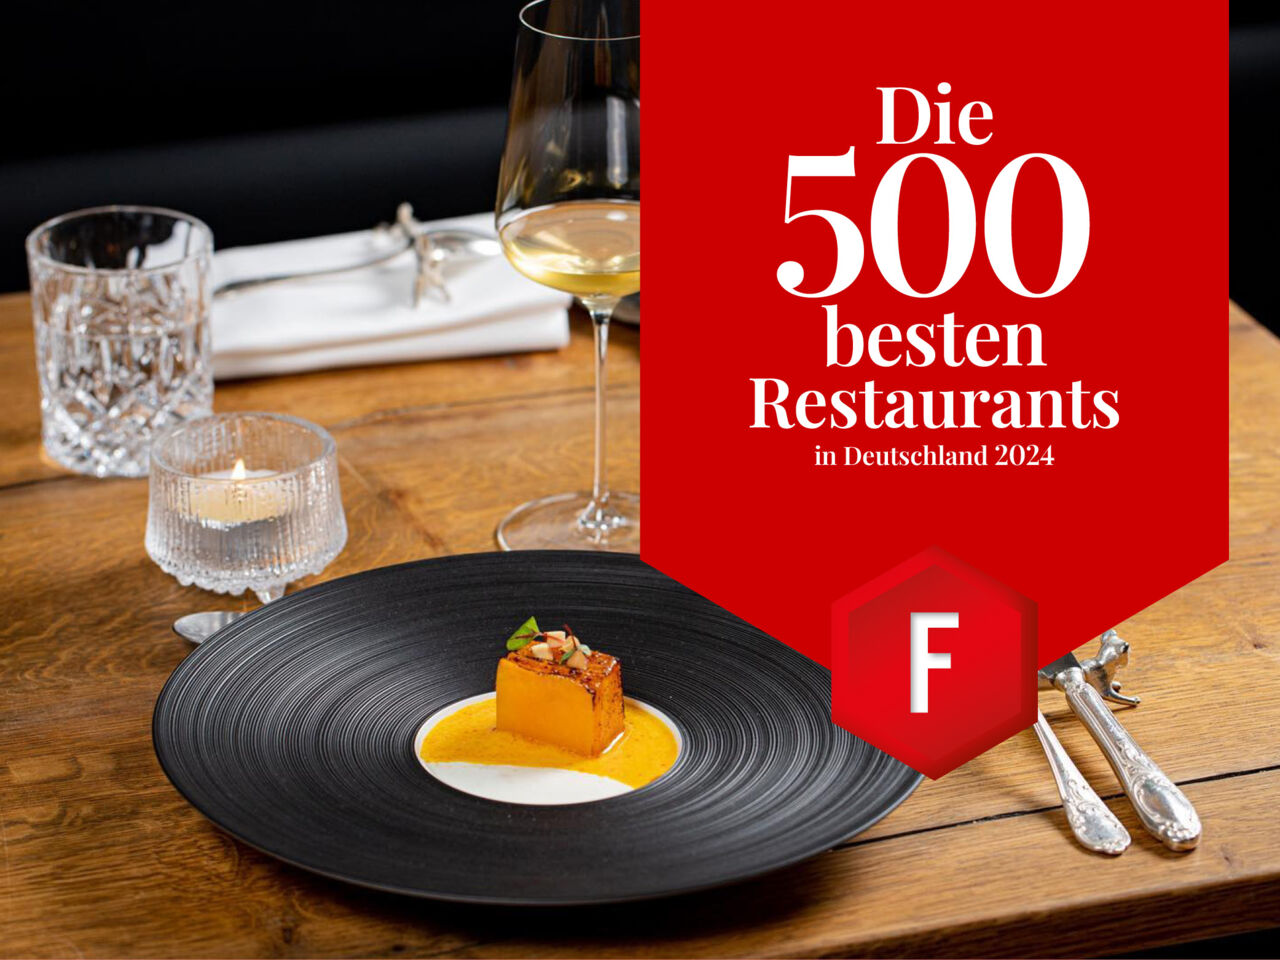 Die 500 besten Restaurants in Deutschland 2023